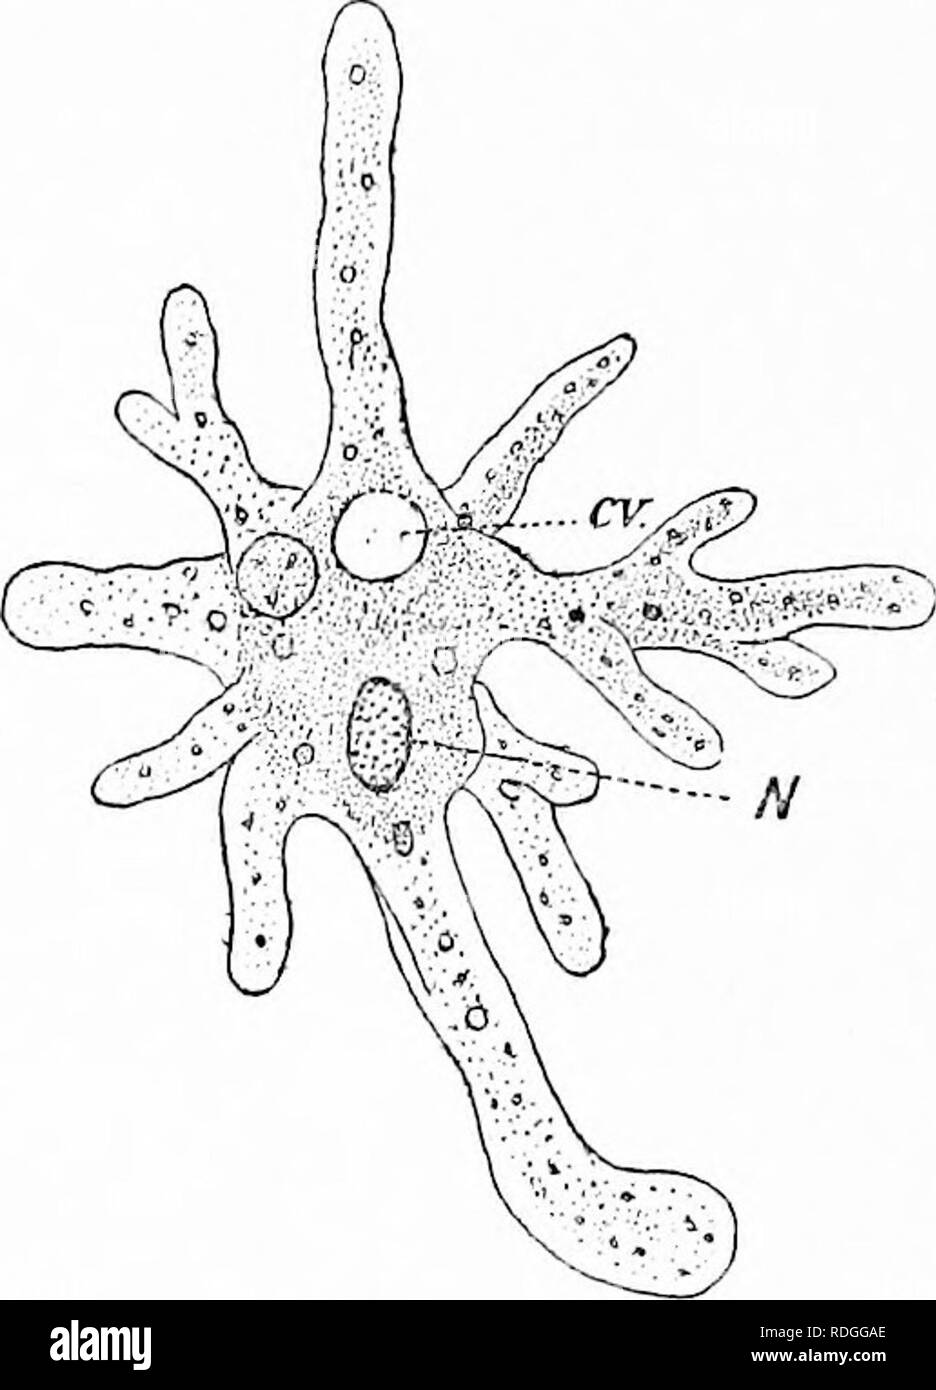 . Cómo utilizar el microscopio; una guía para el principiante. Microscopios. 60 Cómo usar el microscopio llamado así después de que el mítico gigante. El cuerpo es en forma de pera, con una cabeza aplanada y una cola oblicuos. Hay dos pares de antermse y cinco pares de patas cortas, por medio del cual el crustáceo httle imbéciles a sí mismo a través del agua. Las hembras superan ampliamente a los varones en número, y son fácilmente conocido. Fig. 21.-Amceba Proteus. CV, Vacuola contráctil ; N, Nucleus. por los sacos de huevos que cuelgan a ambos lados de la parte inferior del cuerpo. Otros tipos de crustáceos diminutos viven en agua dulce, pero Foto de stock